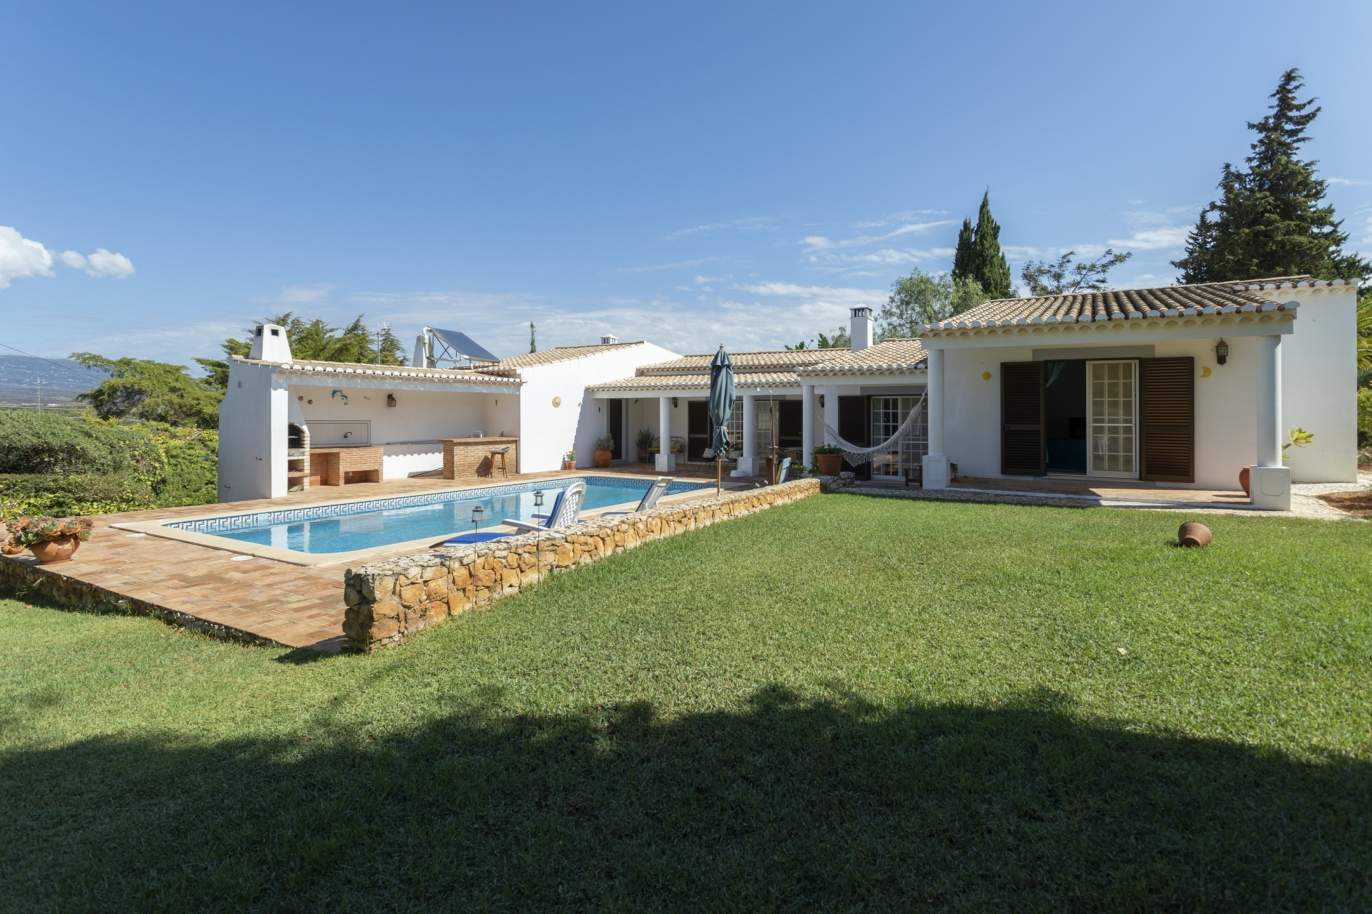 Casa en venta con piscina y jardín en alvor, Algarve, Portugal_179714